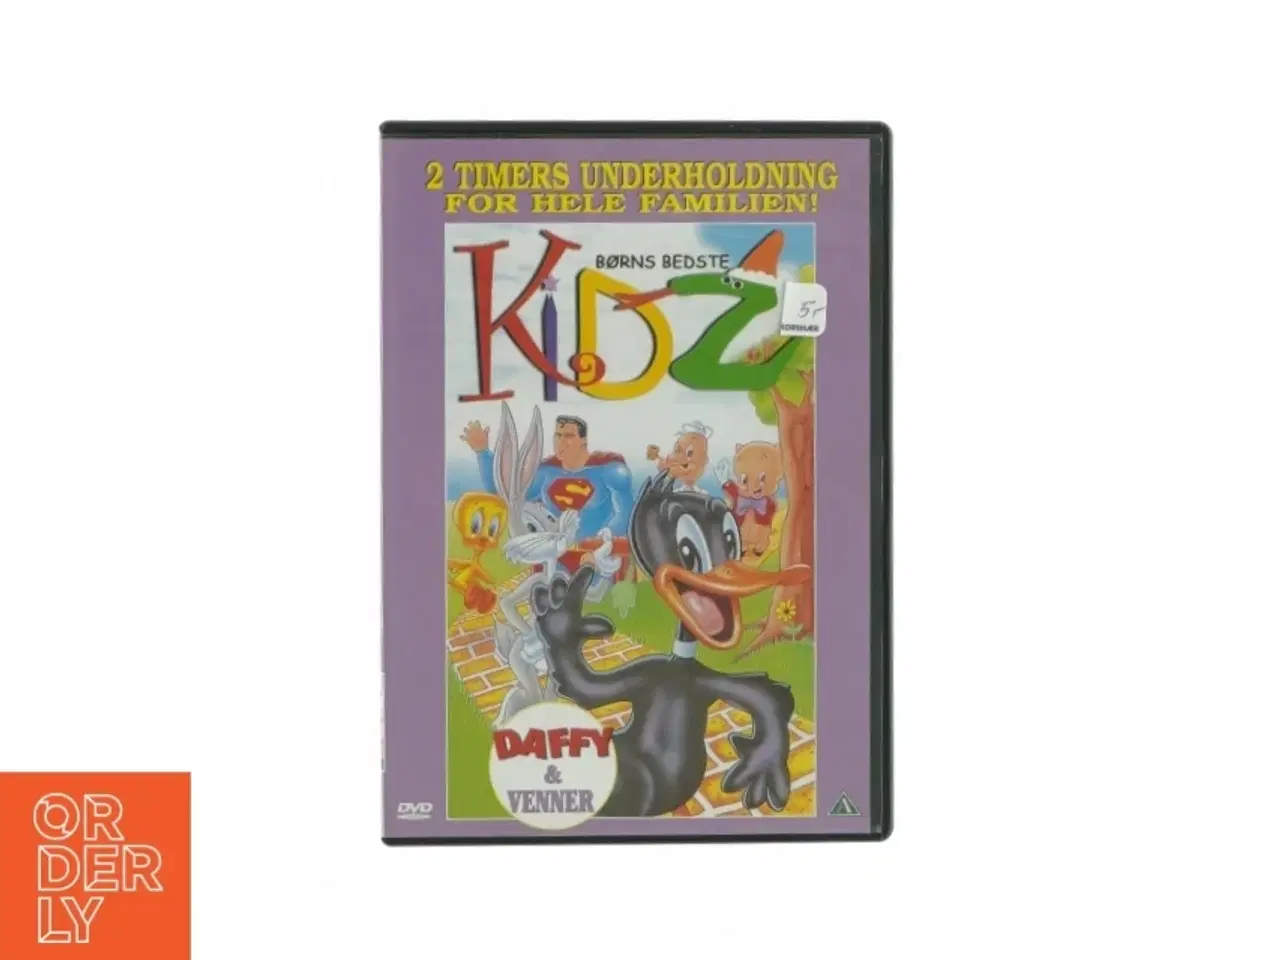 Billede 1 - Kidz - børns bedste (DVD)